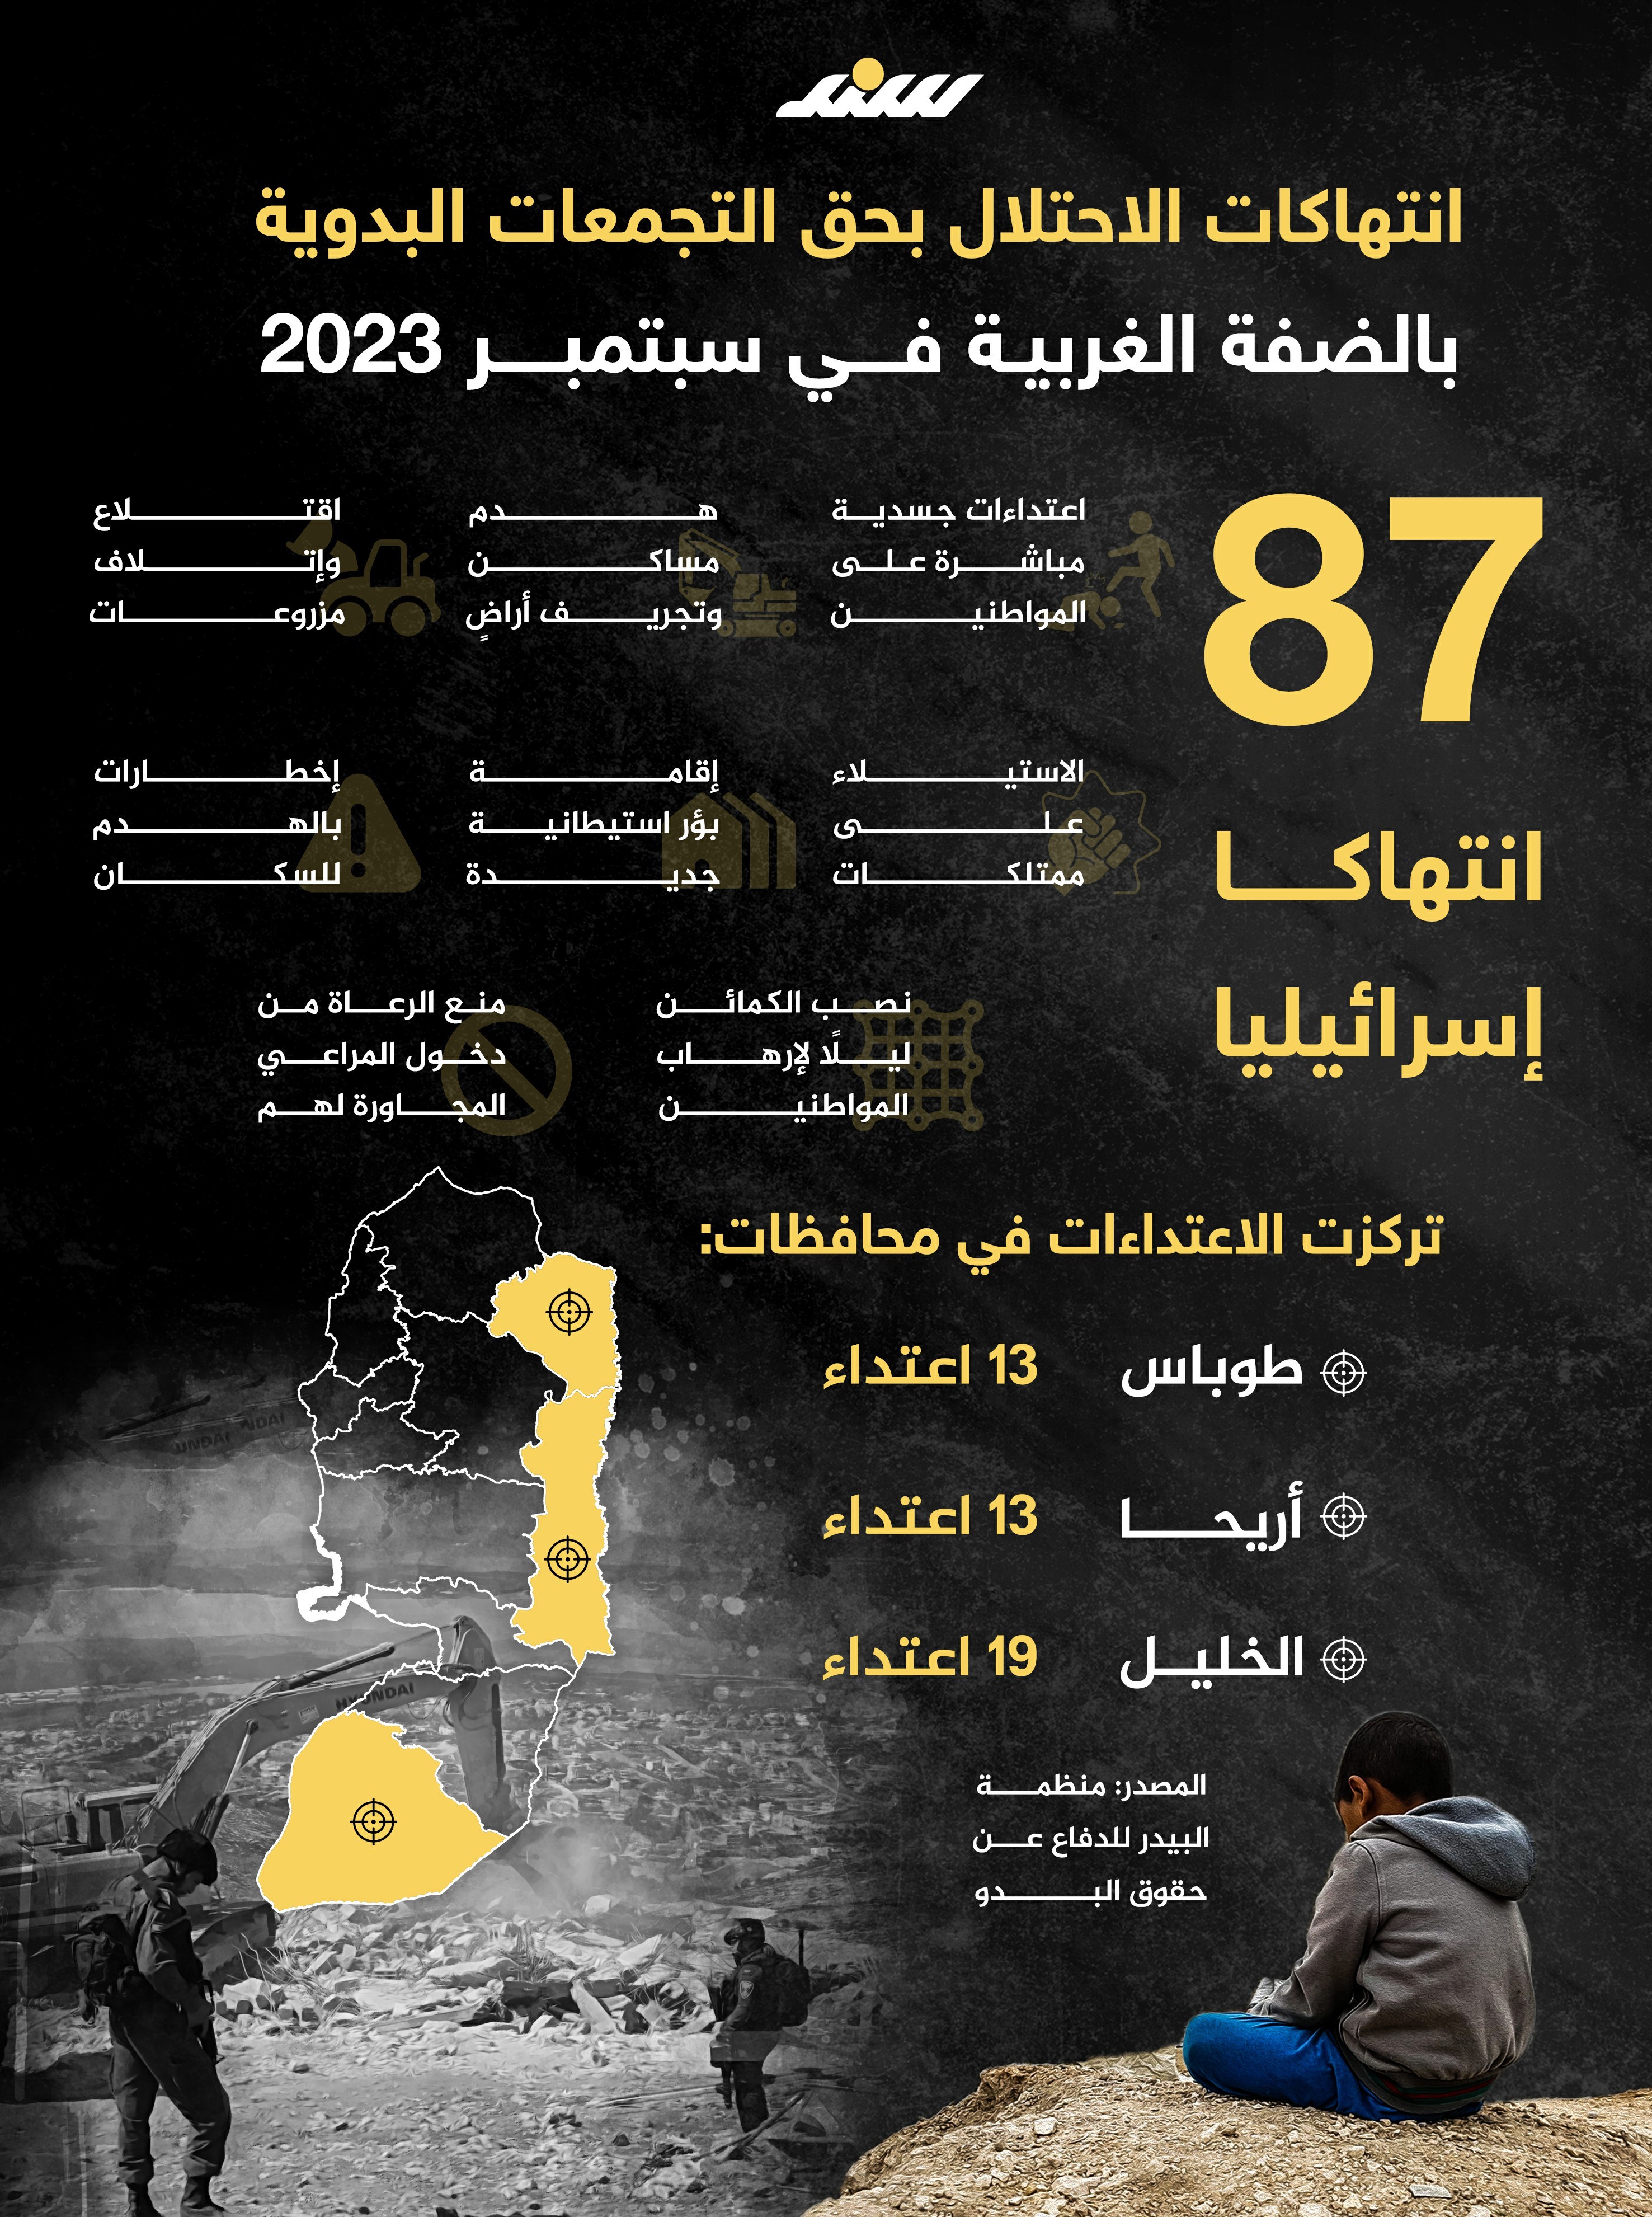 انتهاكات الاحتلال بحق التجمعات البدوية بالضفة الغربية خلال سبتمبر أيلول 2023.jpg